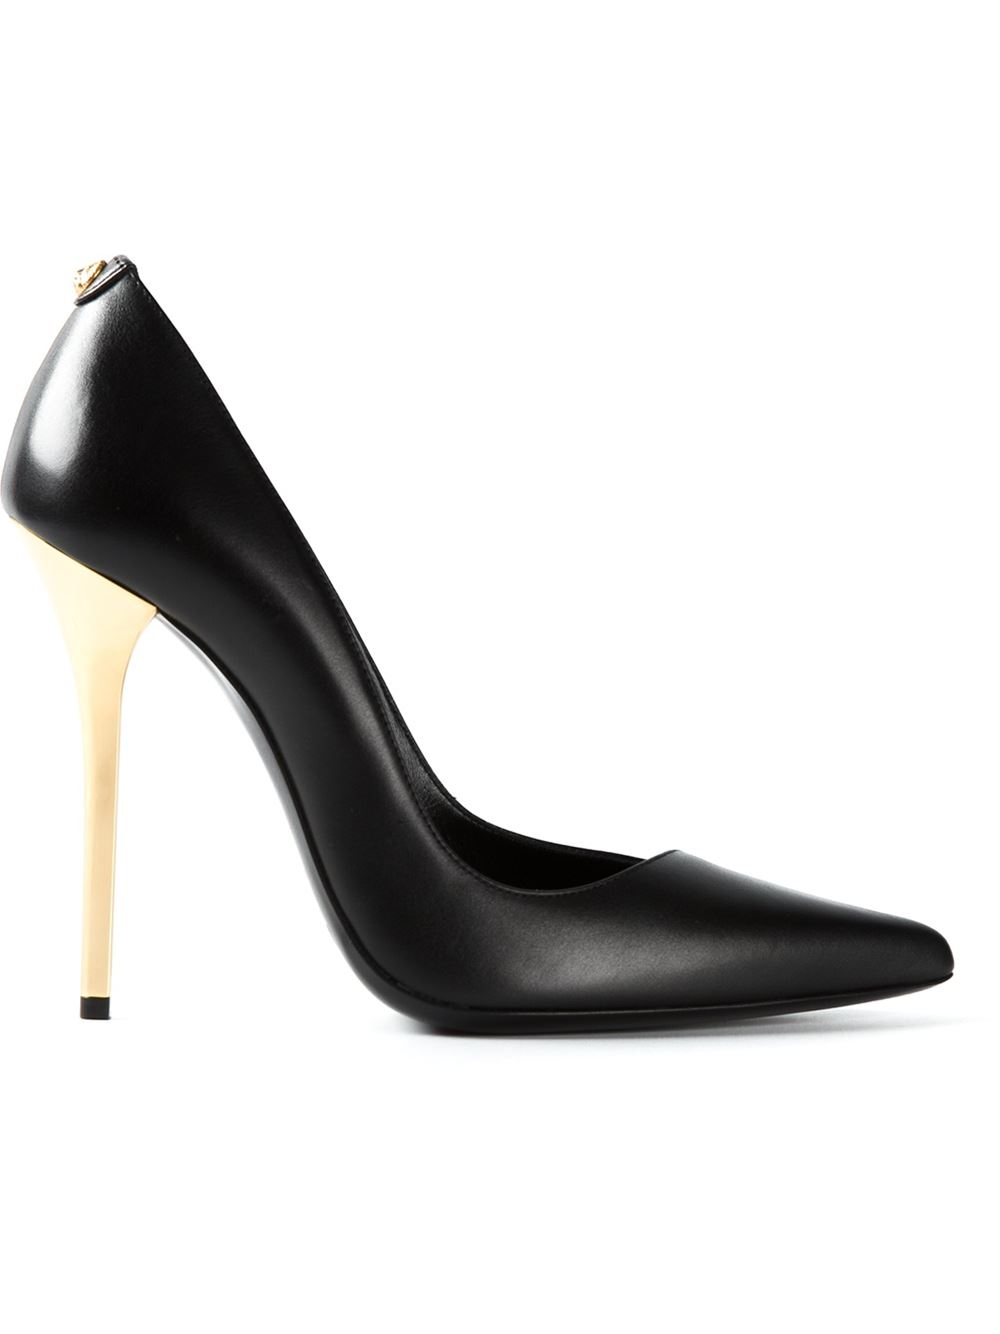 black stilettos with gold heels